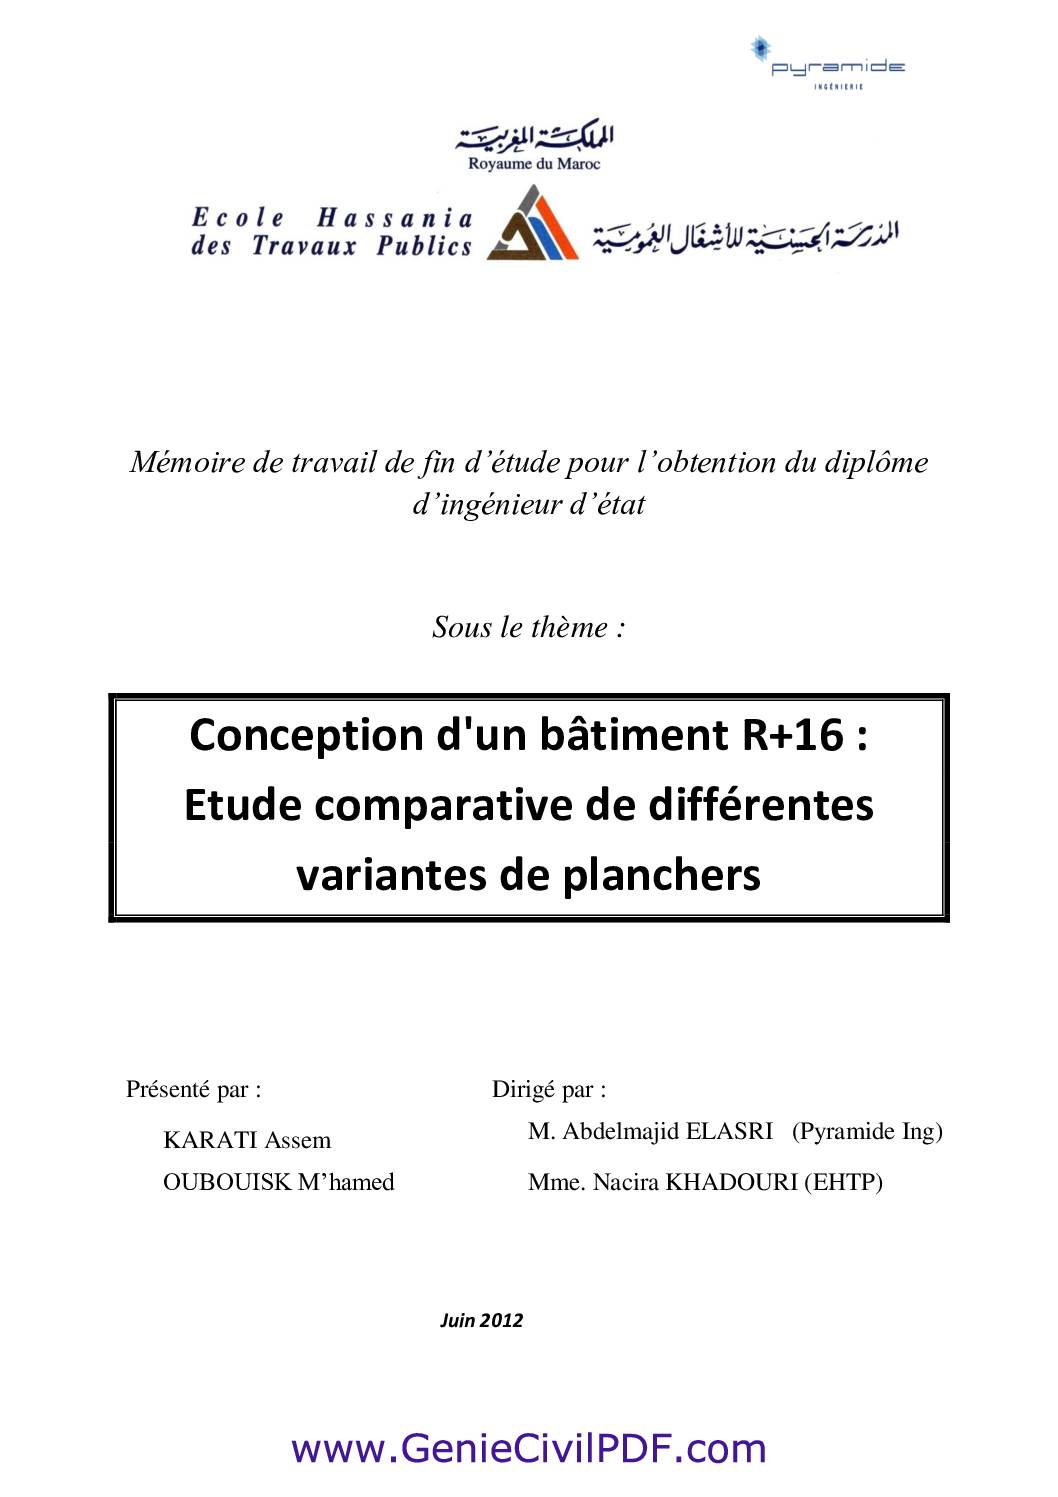 Rapport PFE Conception d’un bâtiment R+16 Etude comparative de différentes variantes de plancher